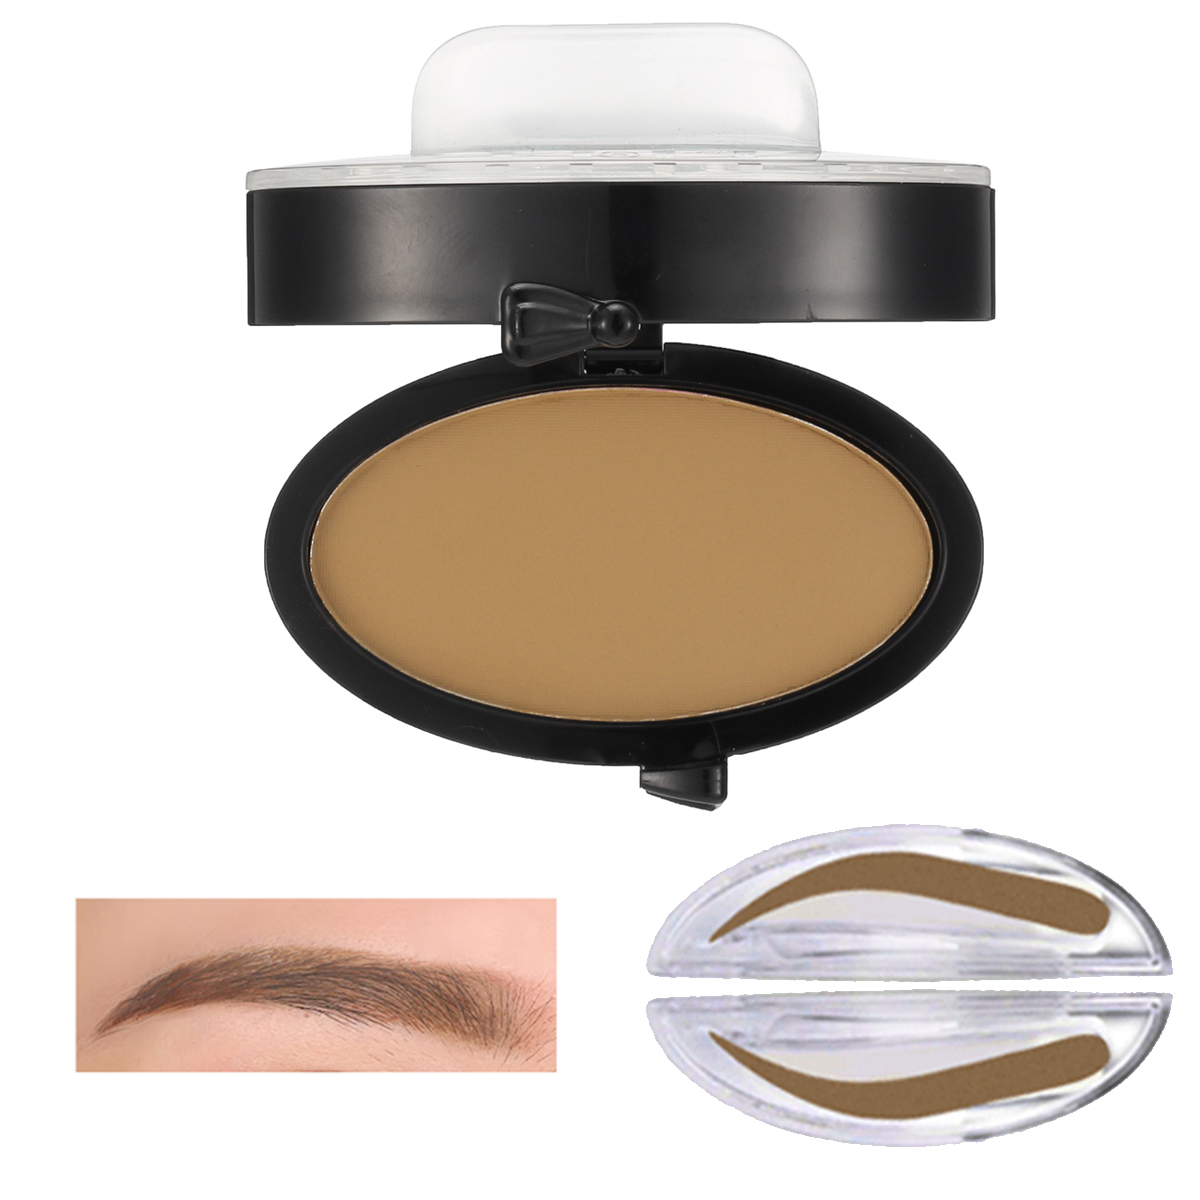 Brow Stamp Powder Grey Brown Makeup Eyebrow Gel Seal Waterproof Eyes Cosmetic Black Head Brush Tools